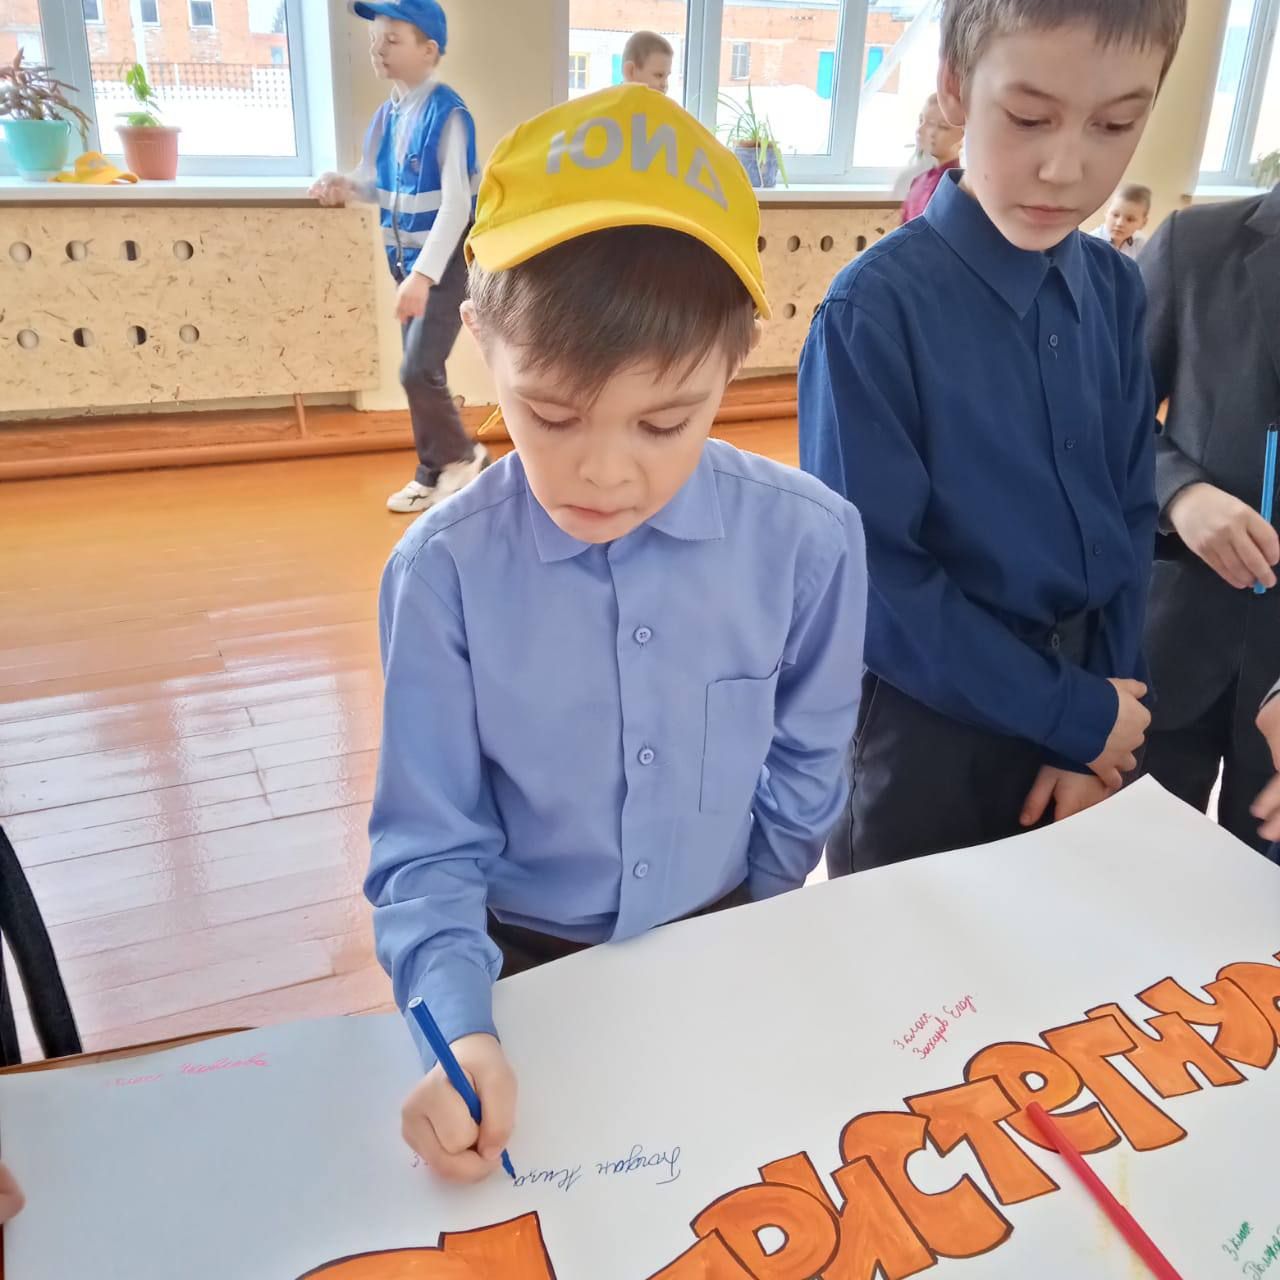 В Старо-Челнинской школе Нурлатского района состоялась акция «Пристегнись»